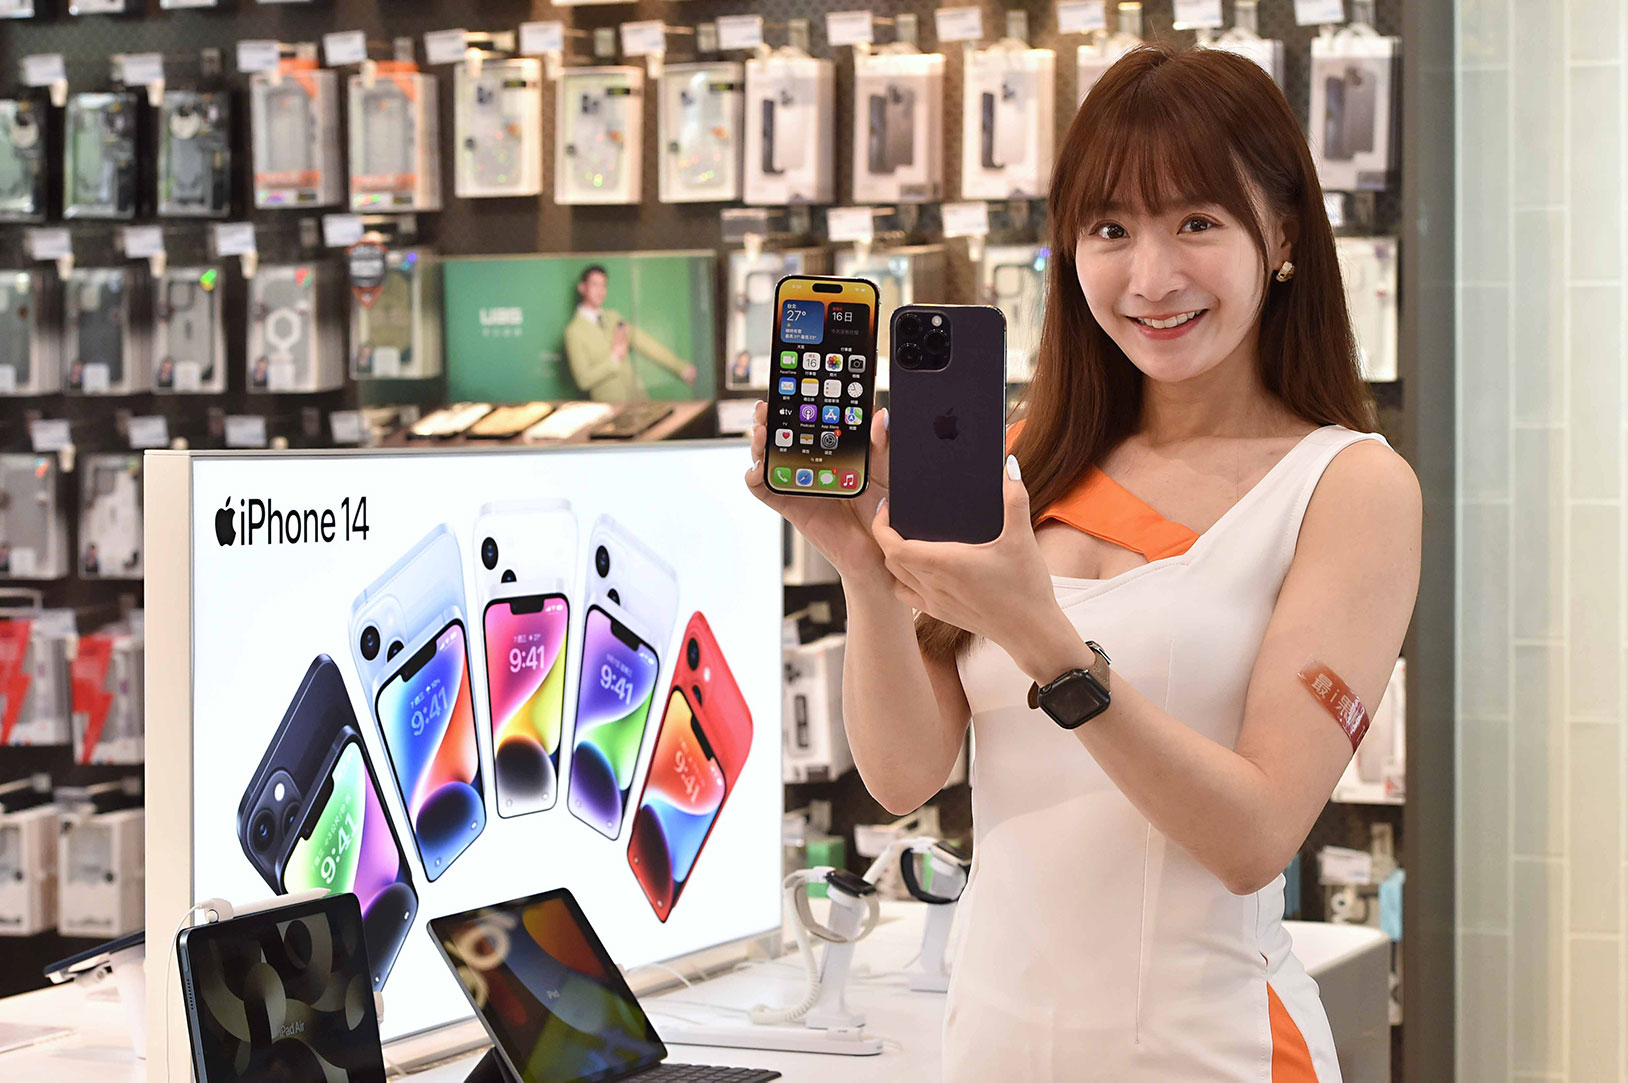 台灣大哥大開賣 iPhone 14、iPhone 14 Pro、iPhone 14 Pro Max，配 5G 指定專案，iPhone 14 就能 0 元帶回家。